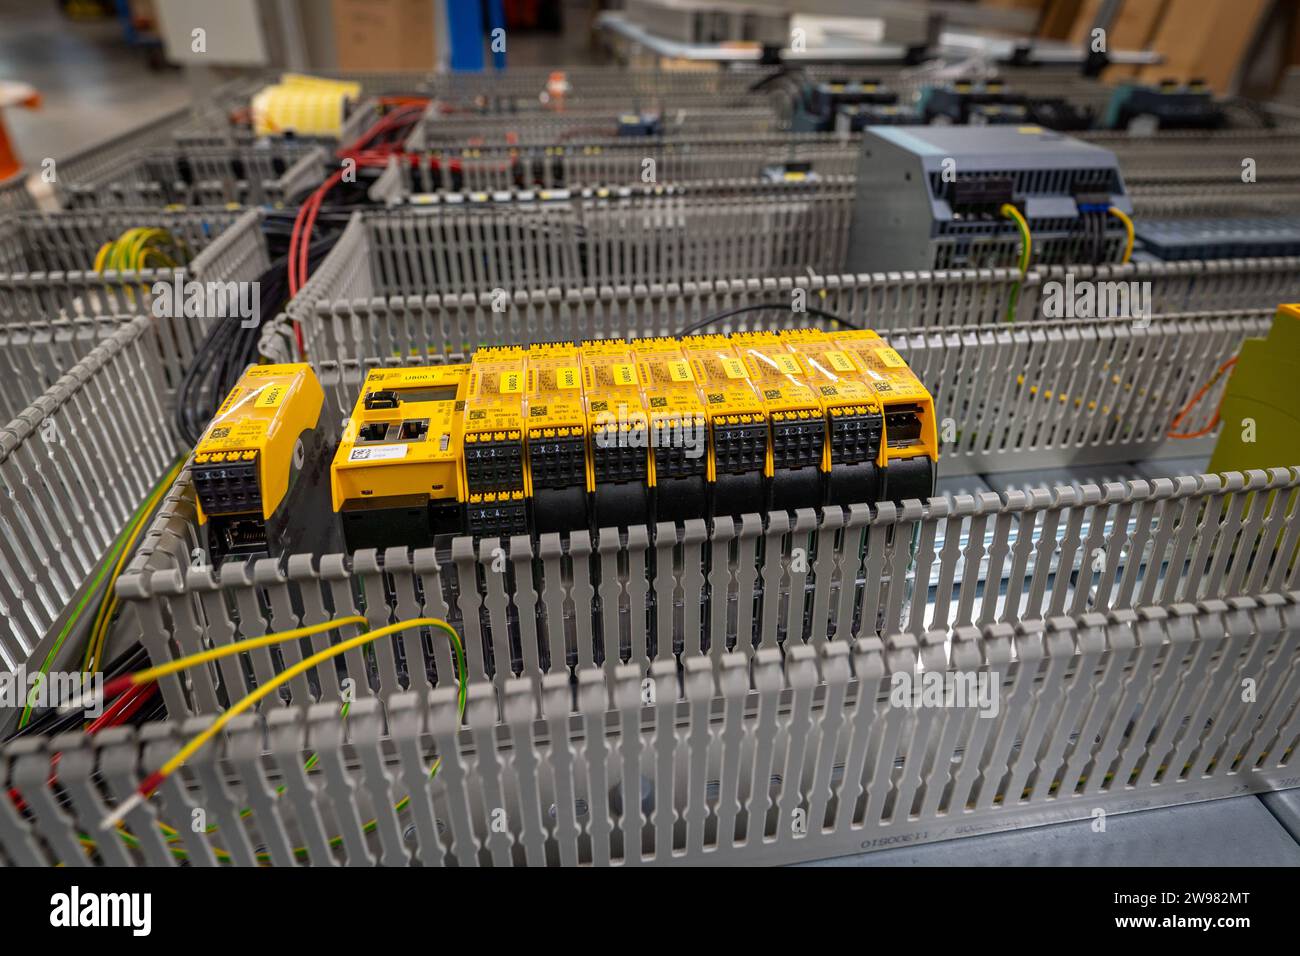 Eine Nahaufnahme einer Vielzahl von elektrischen Kabeln, Kabeln und Drähten in einem Elektronikschrank Stockfoto